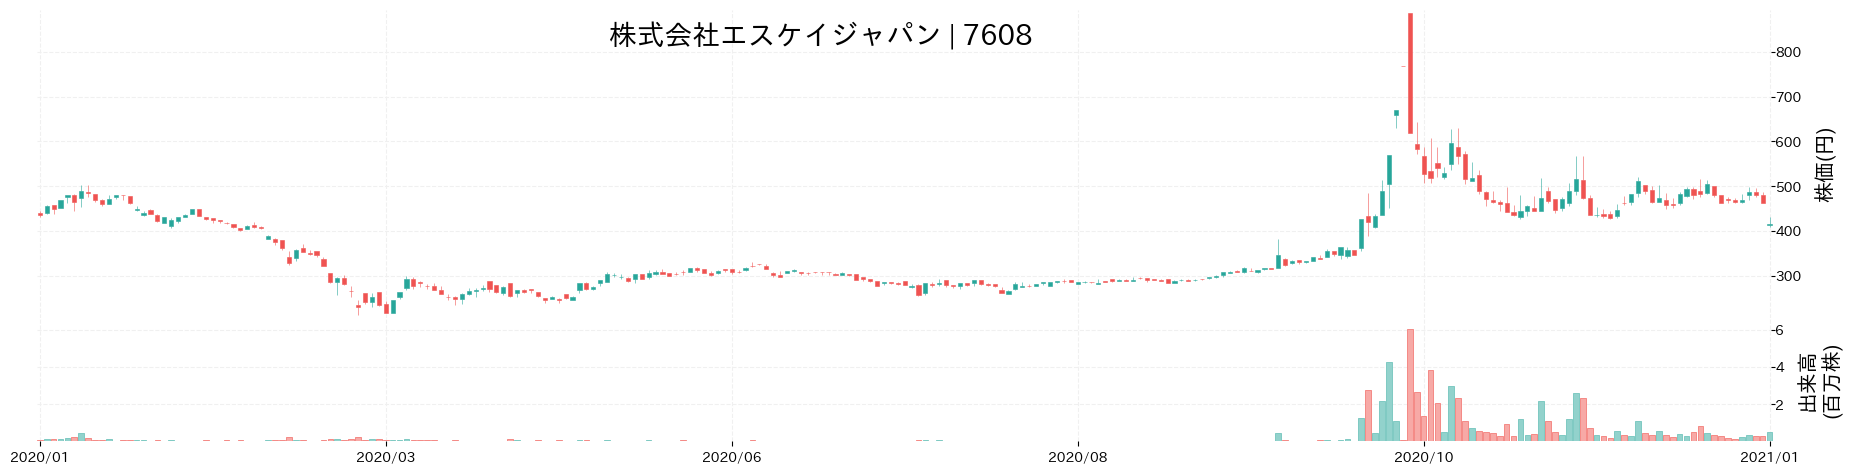 エスケイジャパンの株価推移(2020)